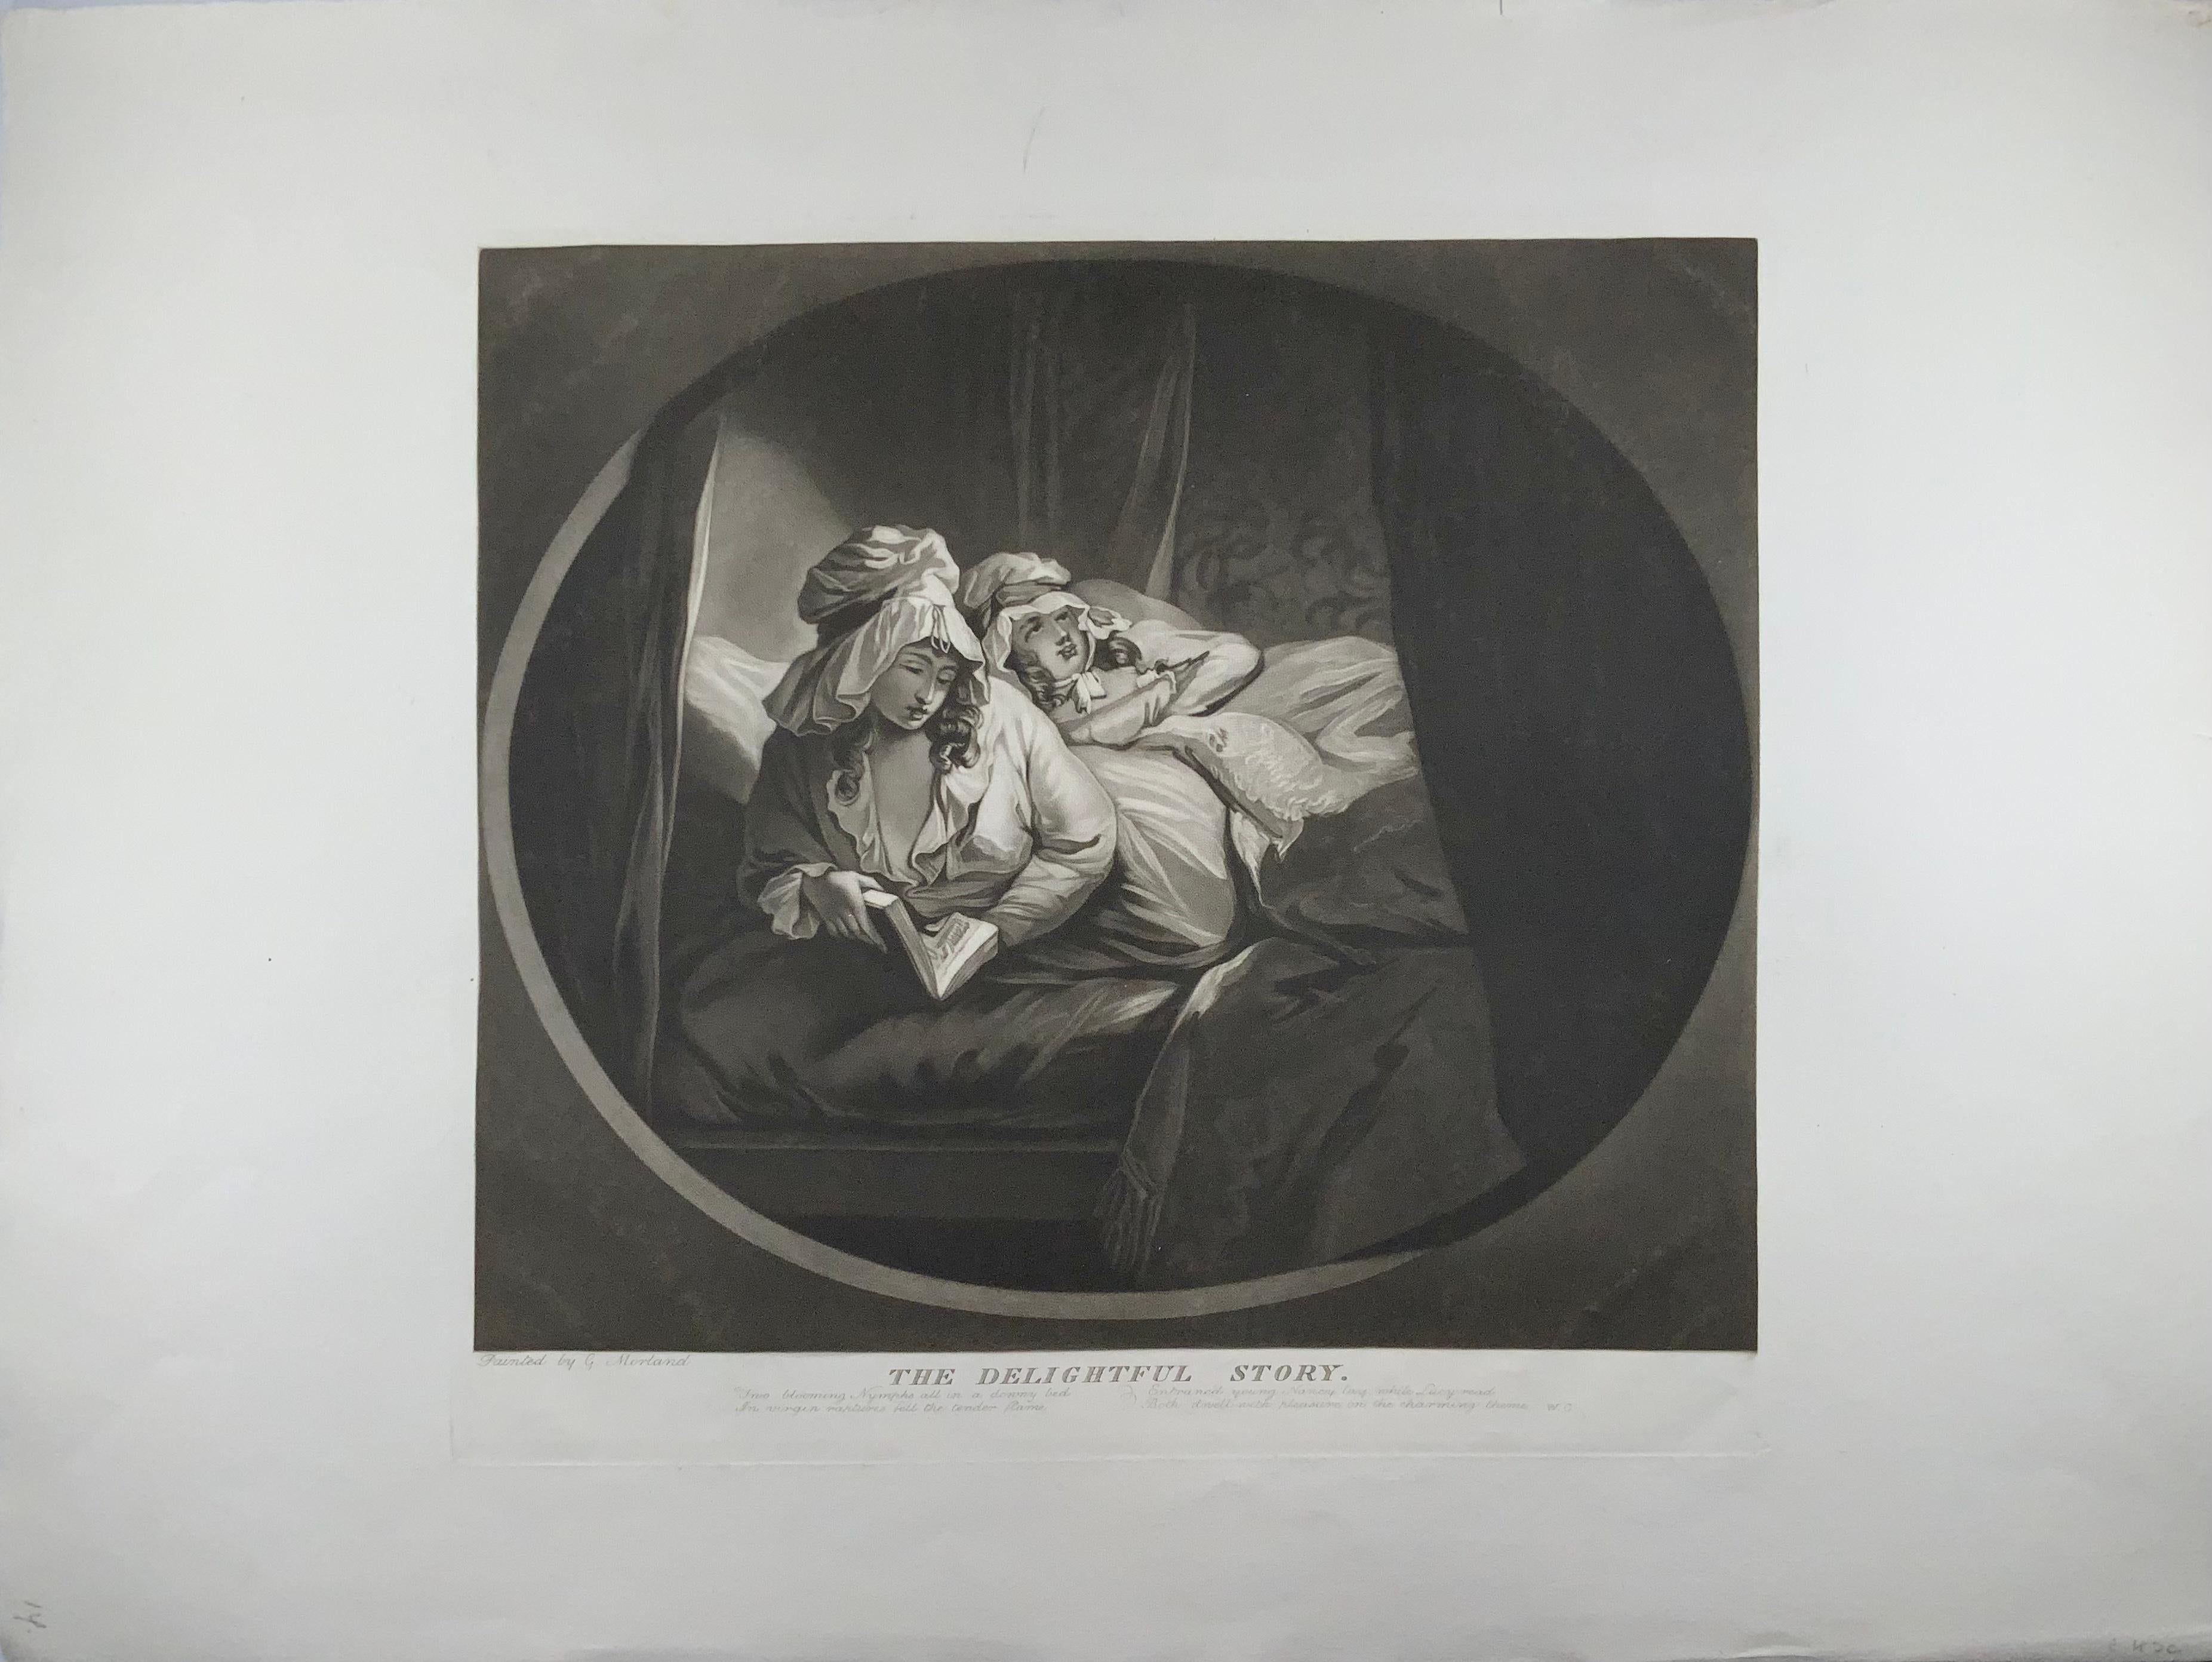 Geschaffen von William Ward (Brite (Englisch), 1766-1826), nach George Morland (Brite (Englisch), 1763-1804)

Unter dem Titel steht geschrieben: Zwei blühende Nymphen ganz in einem flaumigen Bett / In jungfräulicher Verzückung fiel die zarte